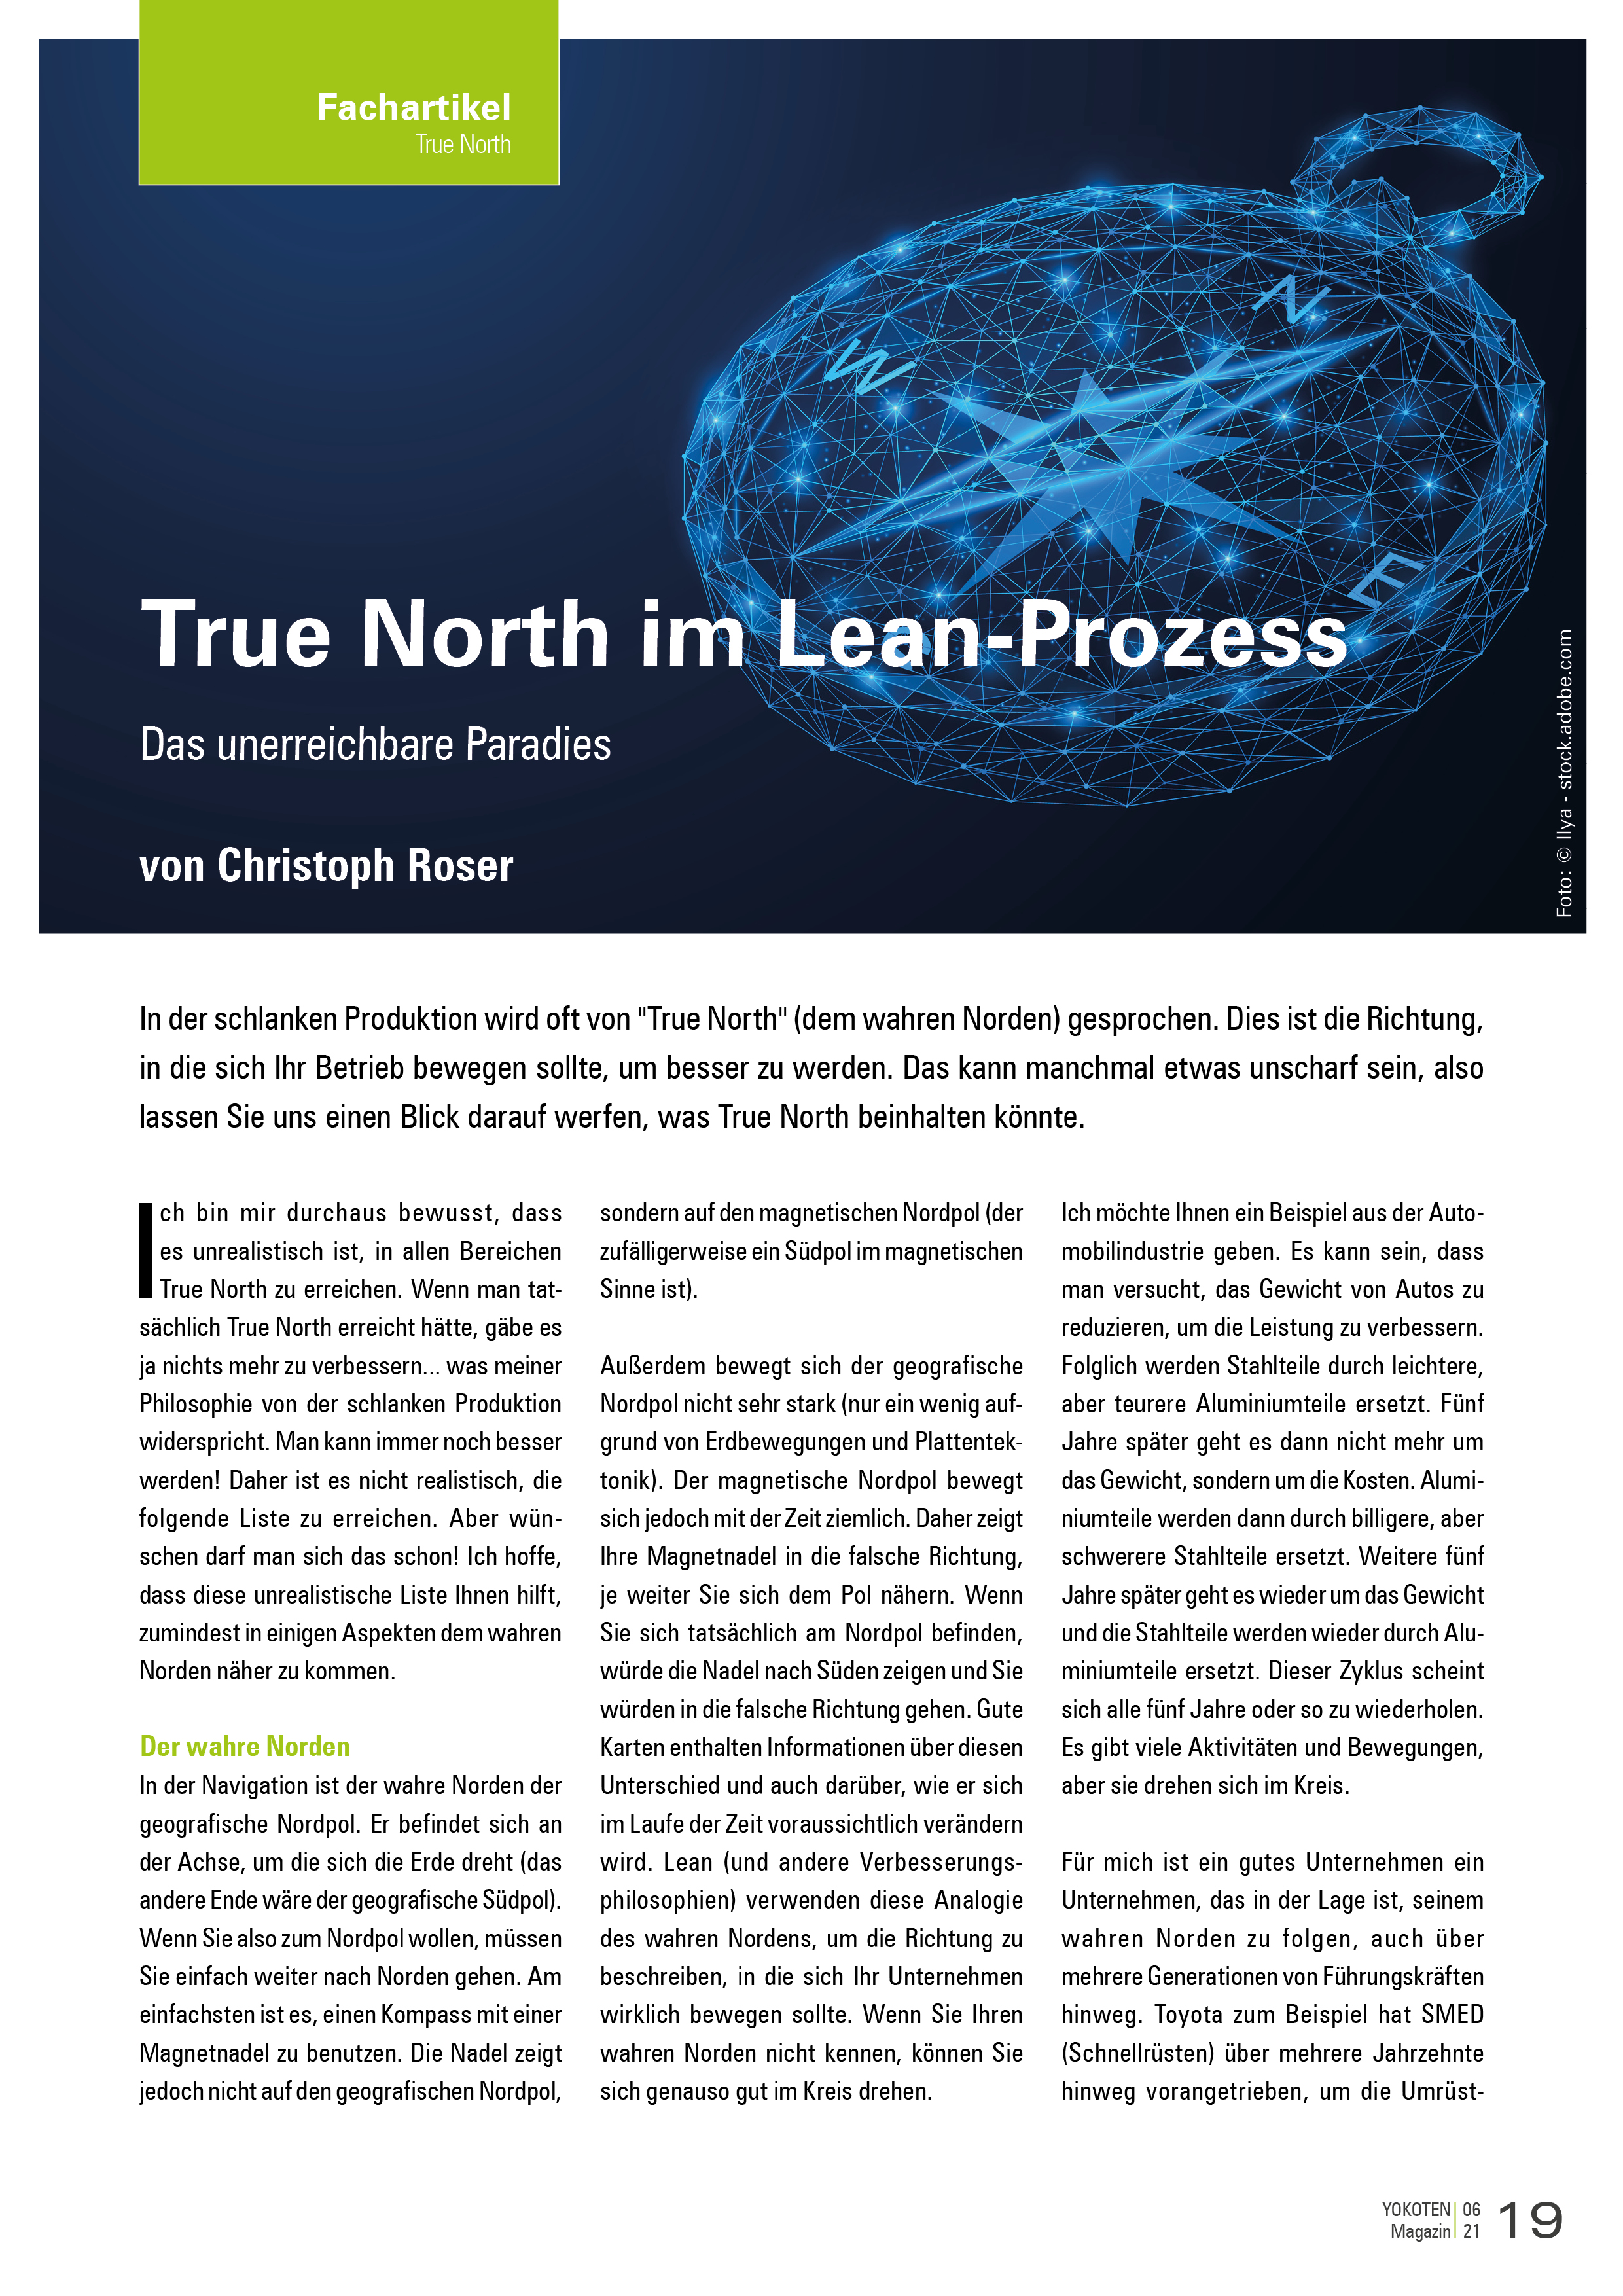 True North im Lean-Prozess - Artikel aus Fachmagazin YOKOTEN 2021-06